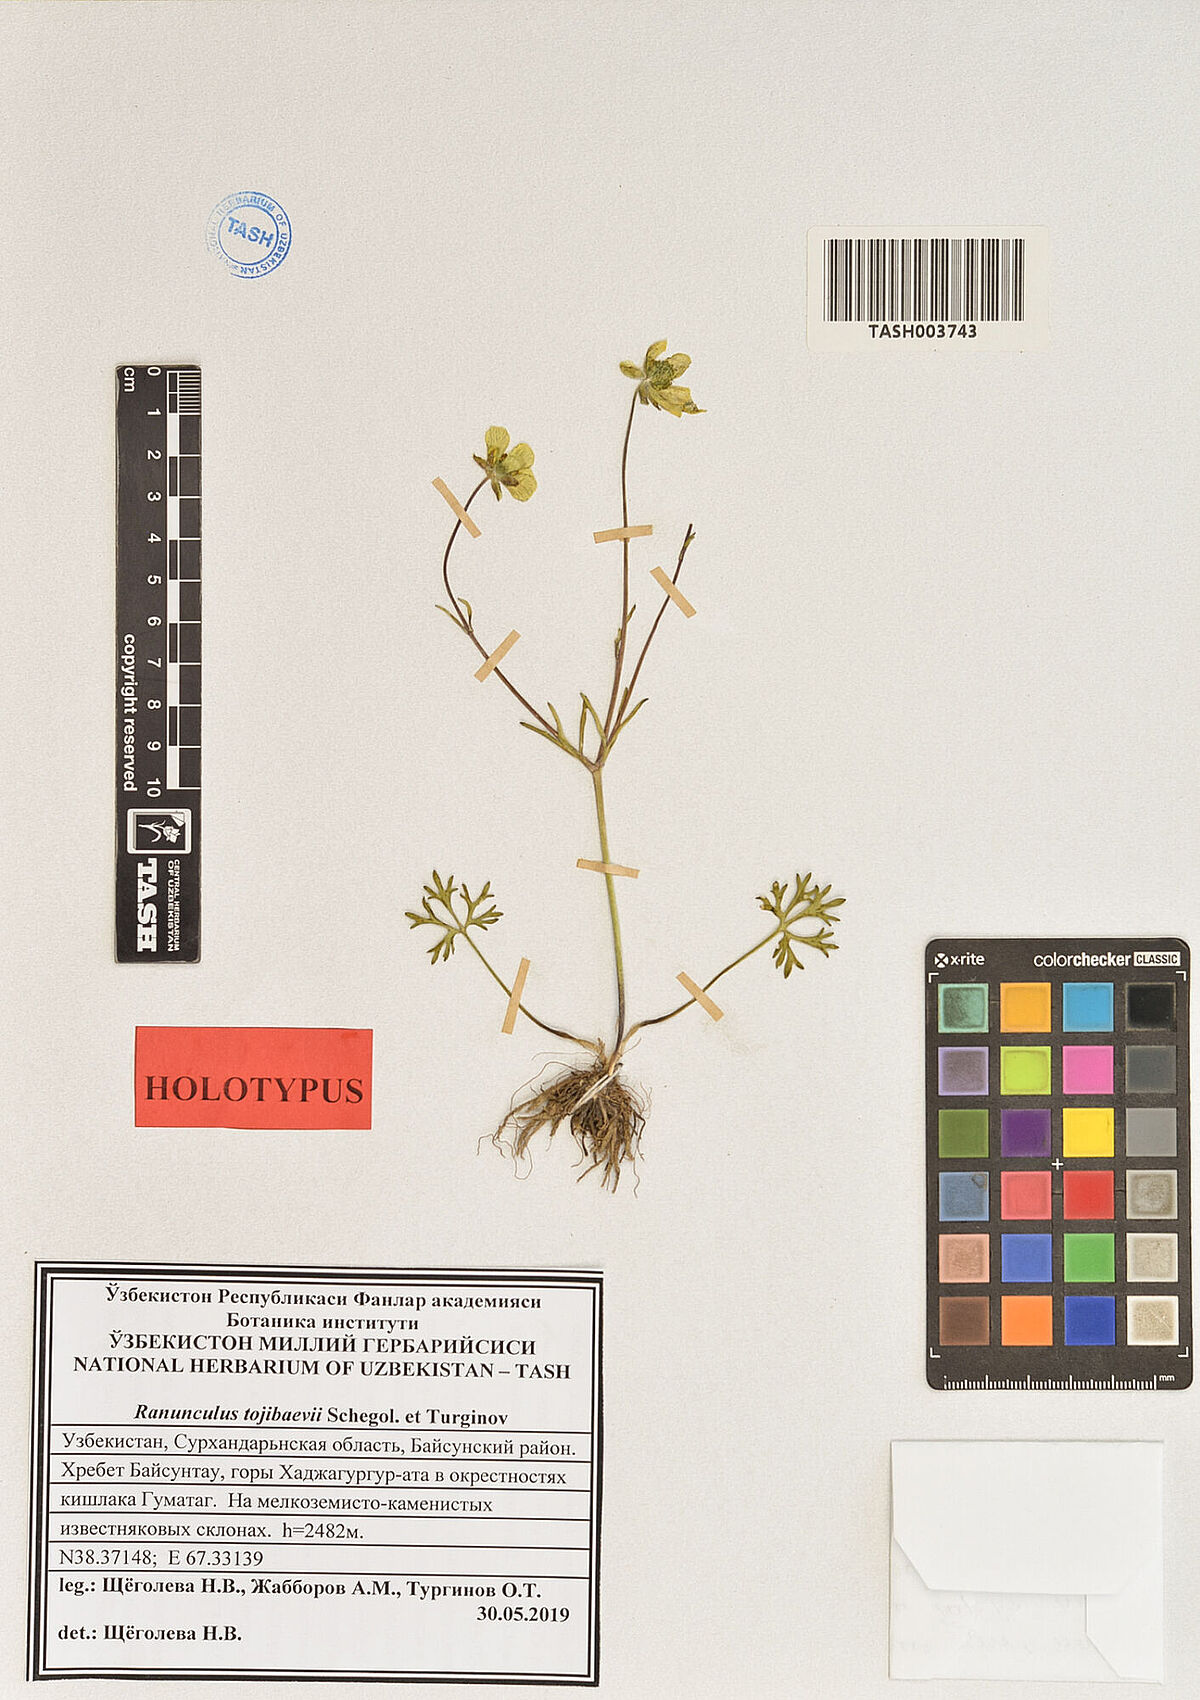 Digitalisierter Herbarbeleg einer neuen Art der Ranunculus aus Usbekistan aus dem TASH 